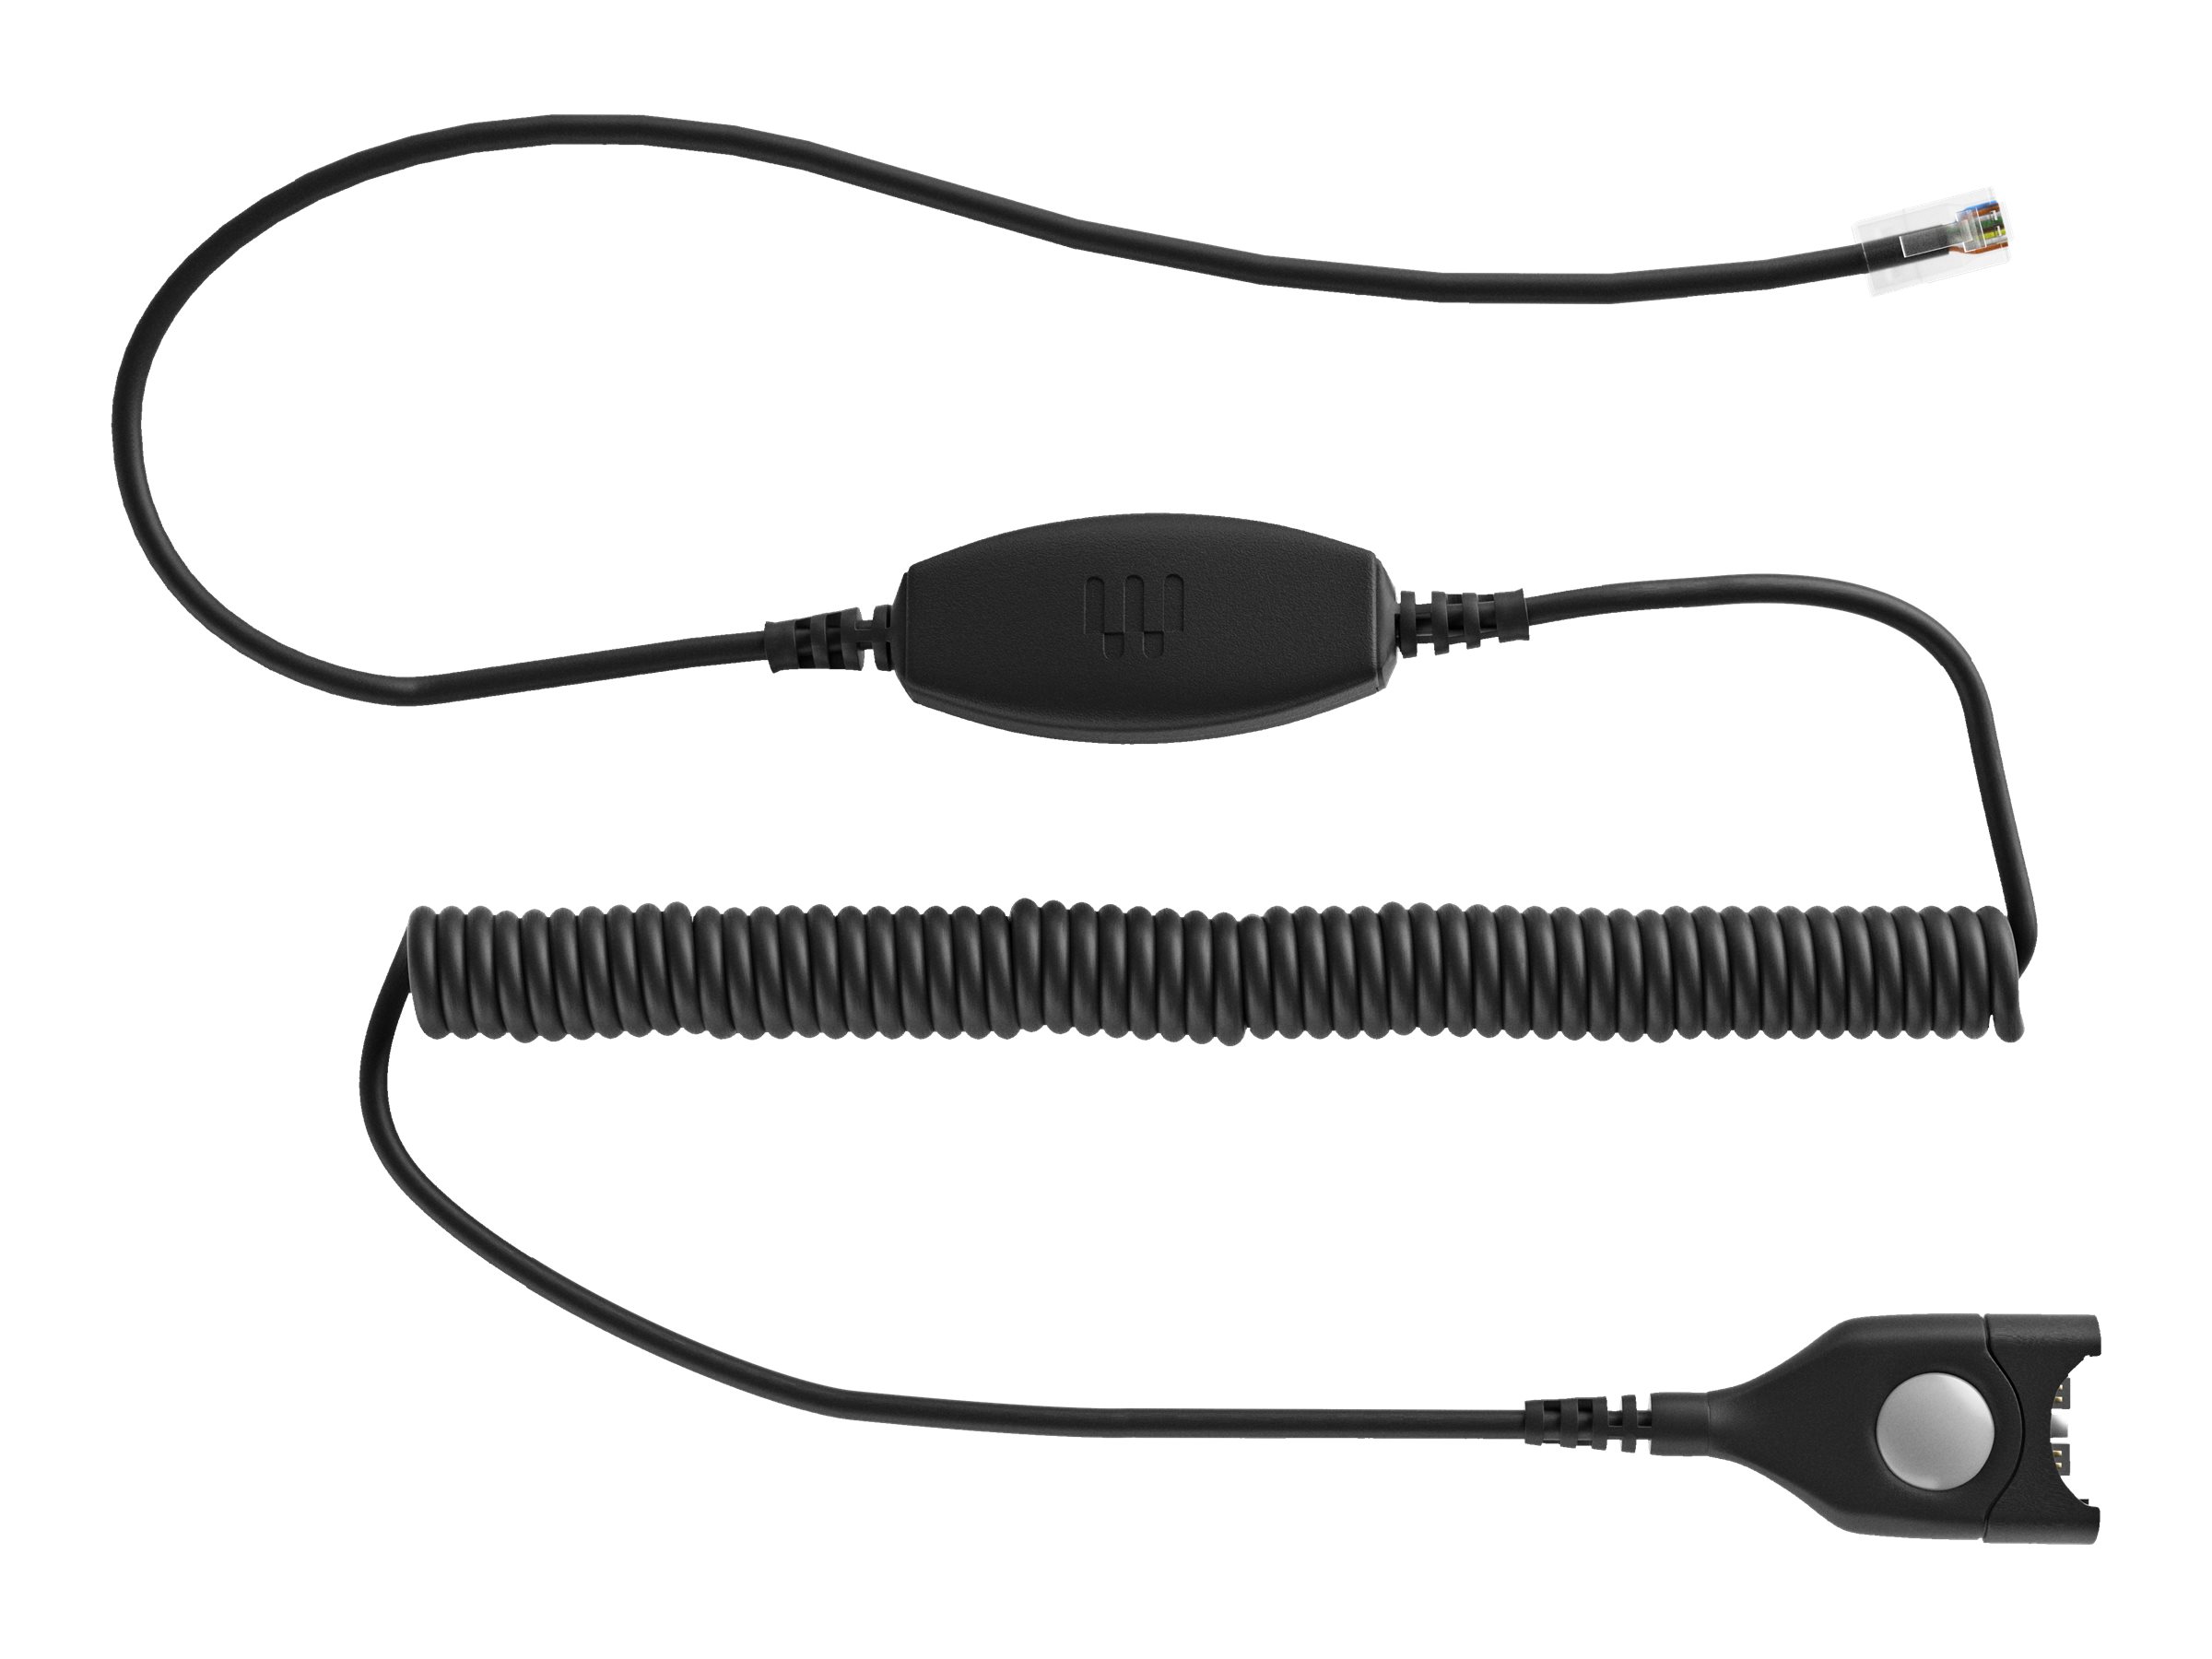 EPOS CXHS 01 - Headset-Kabel - EasyDisconnect zu RJ-9 männlich - gewickelt